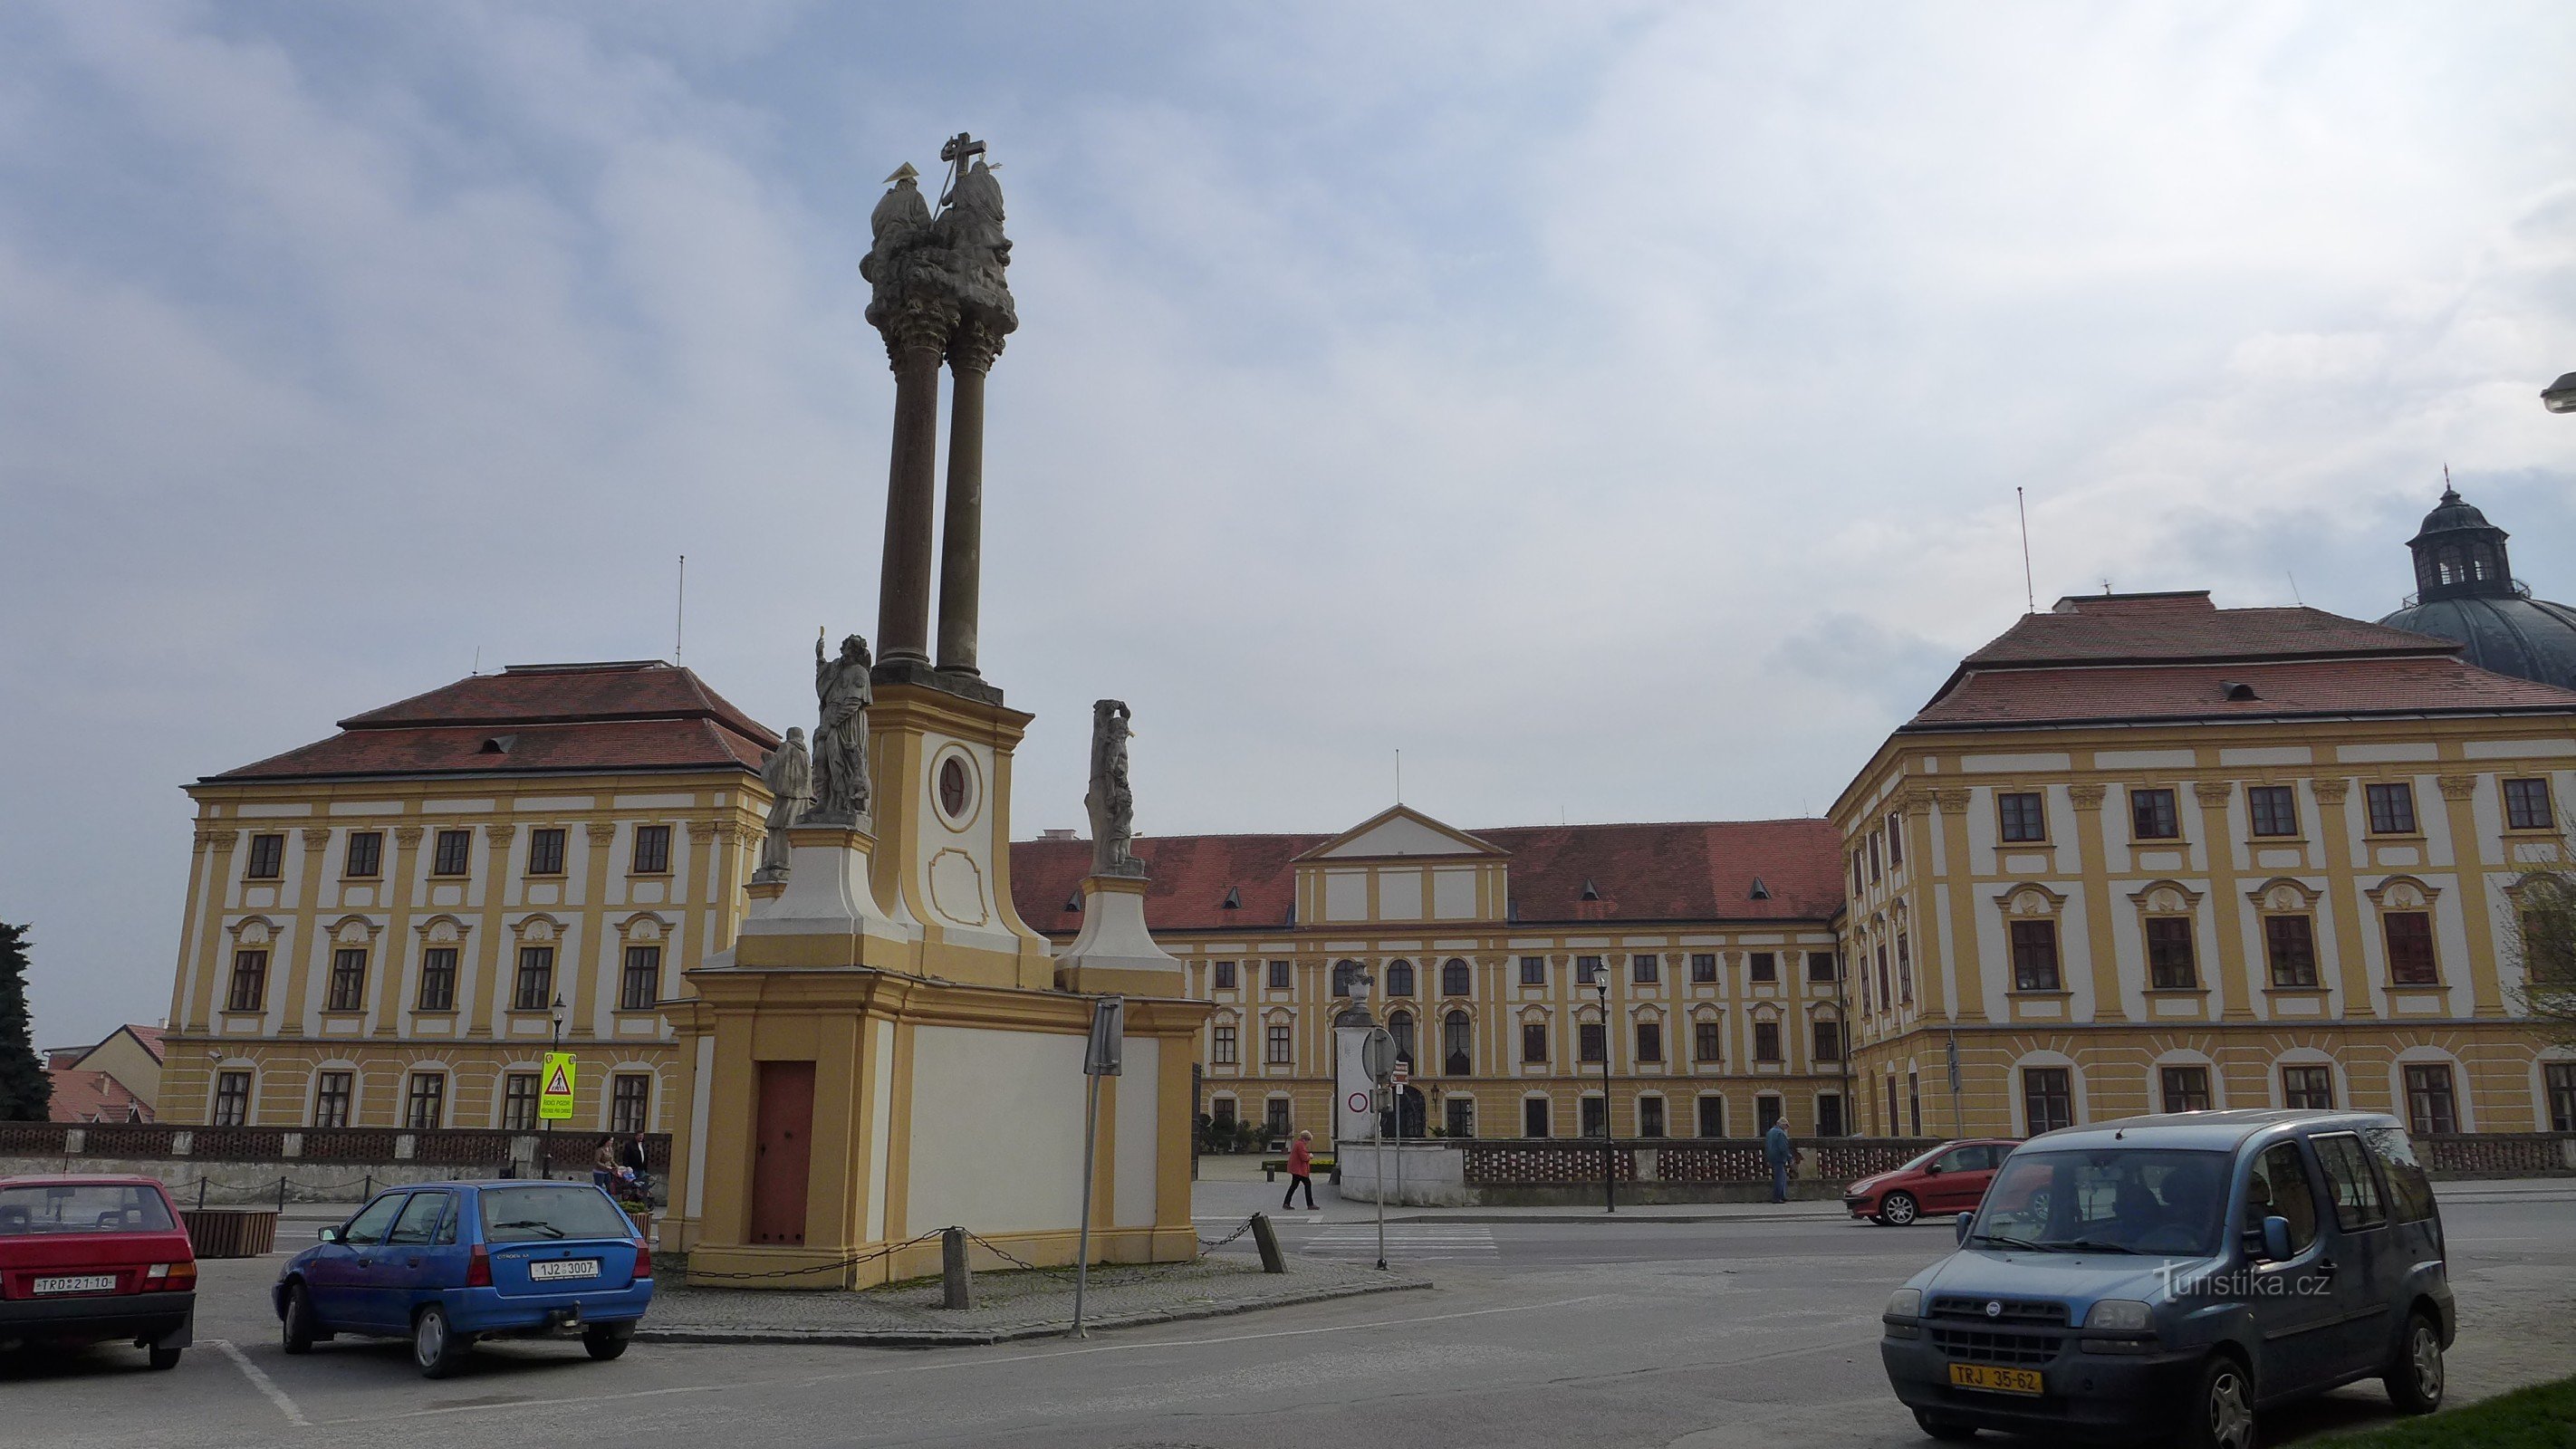 Jaroměřice nad Rokytnou - Statue of the Holy Trinity